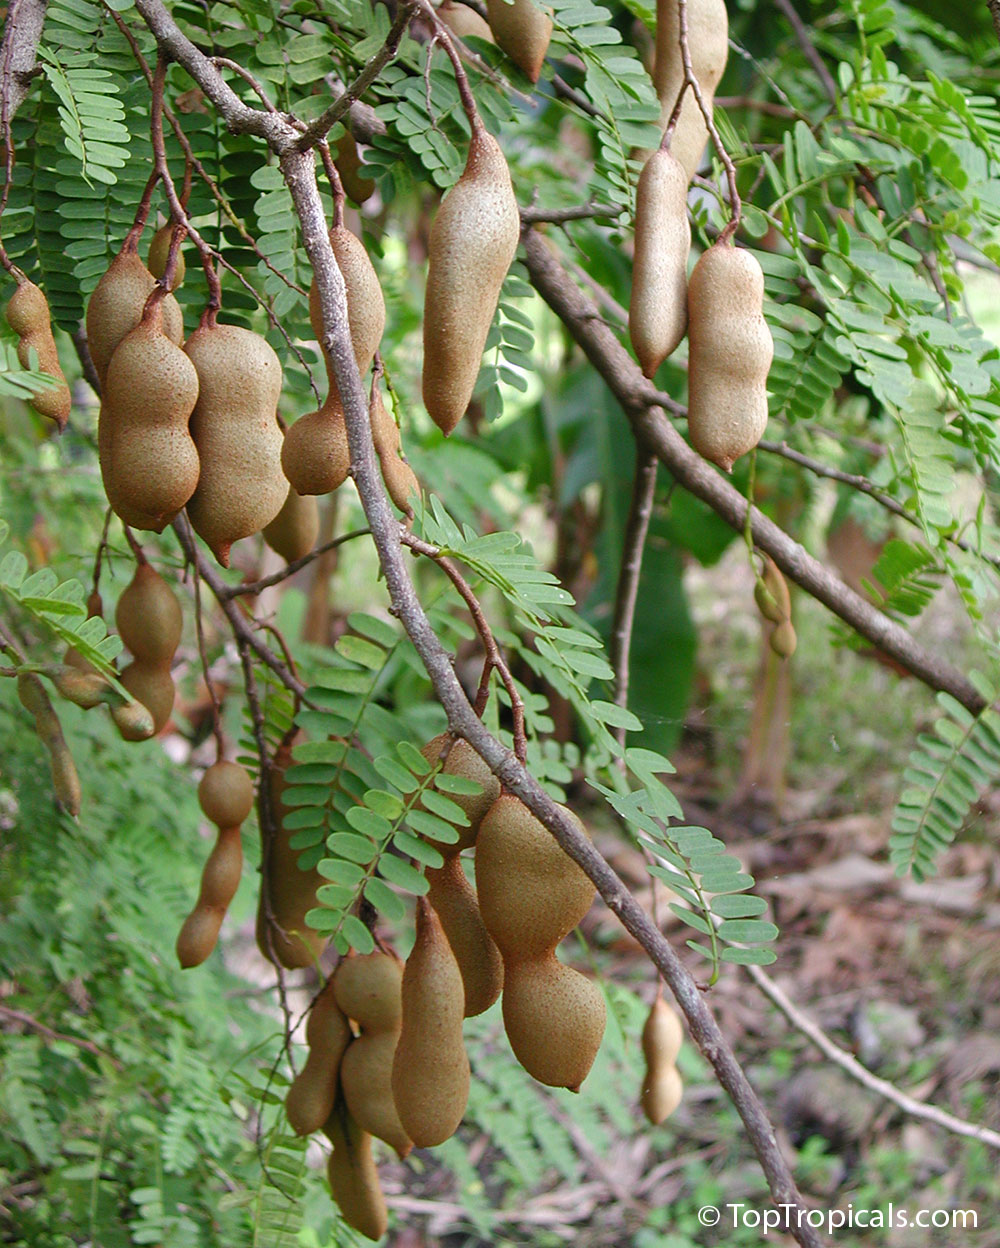 Tamarind fruit hanging